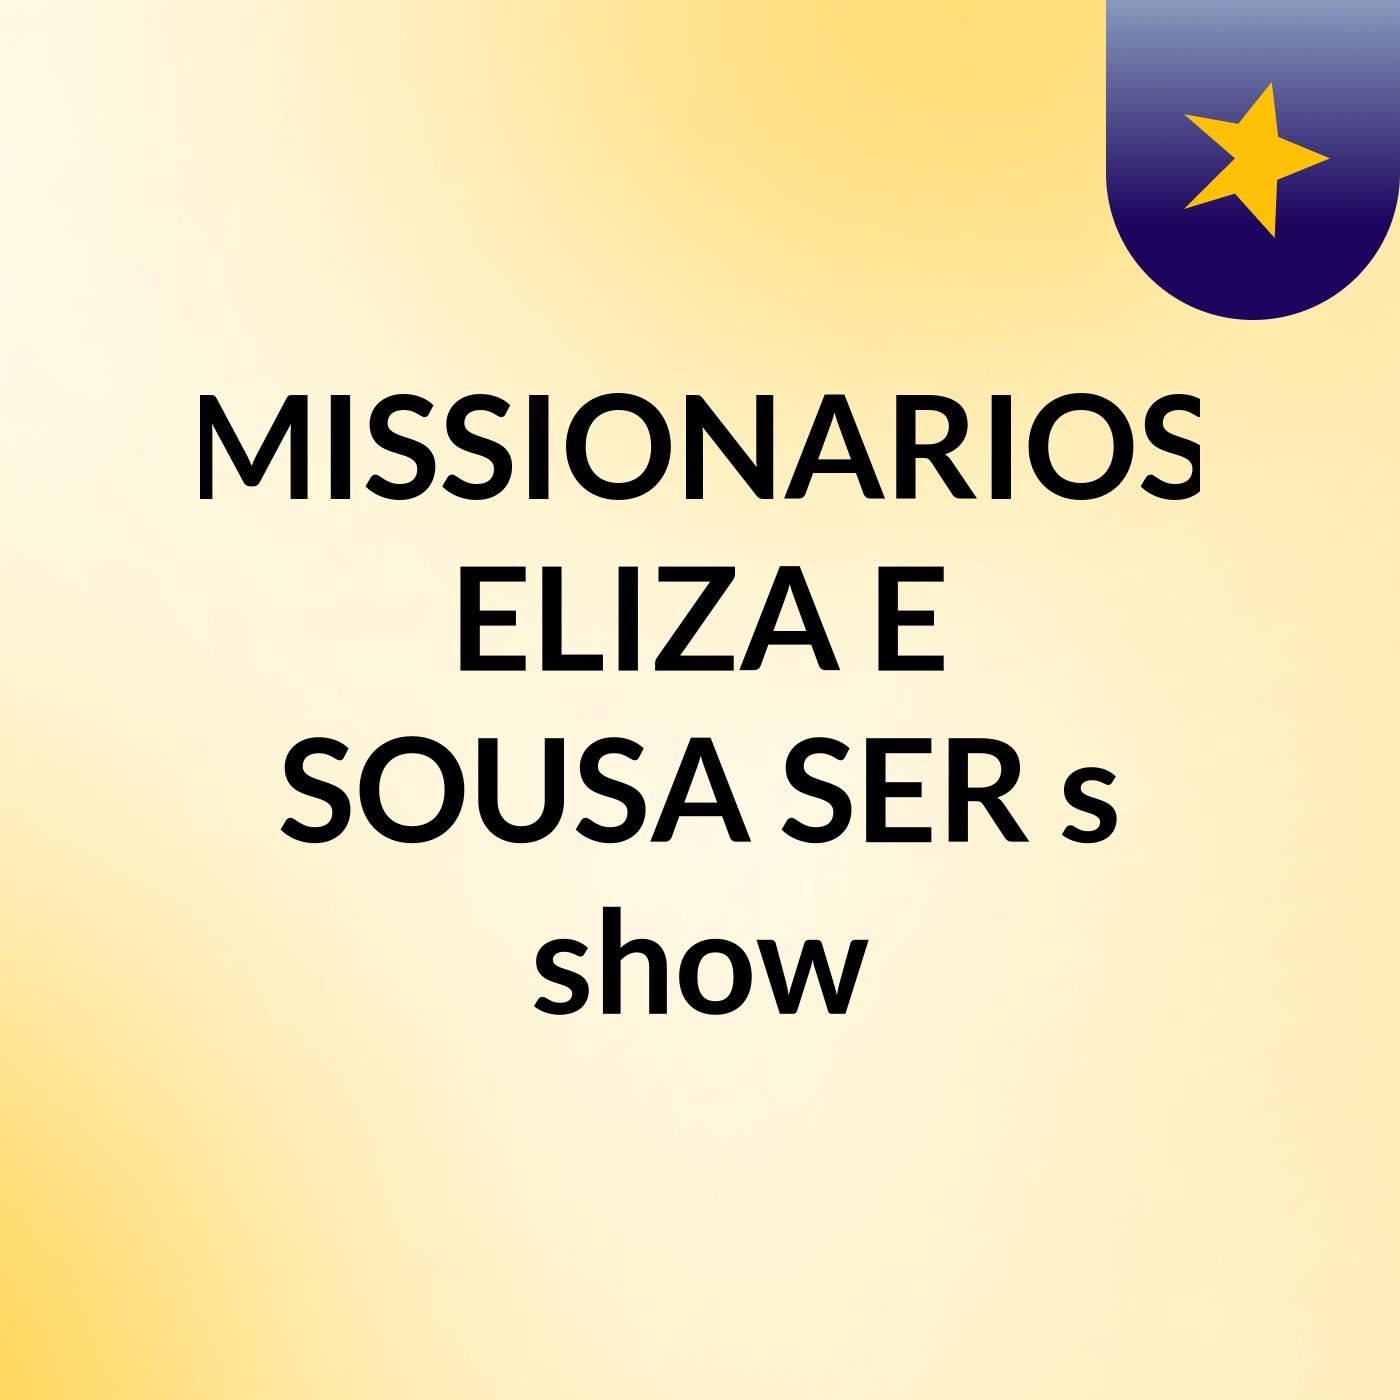 MISSIONARIOS ELIZA E SOUSA SER's show